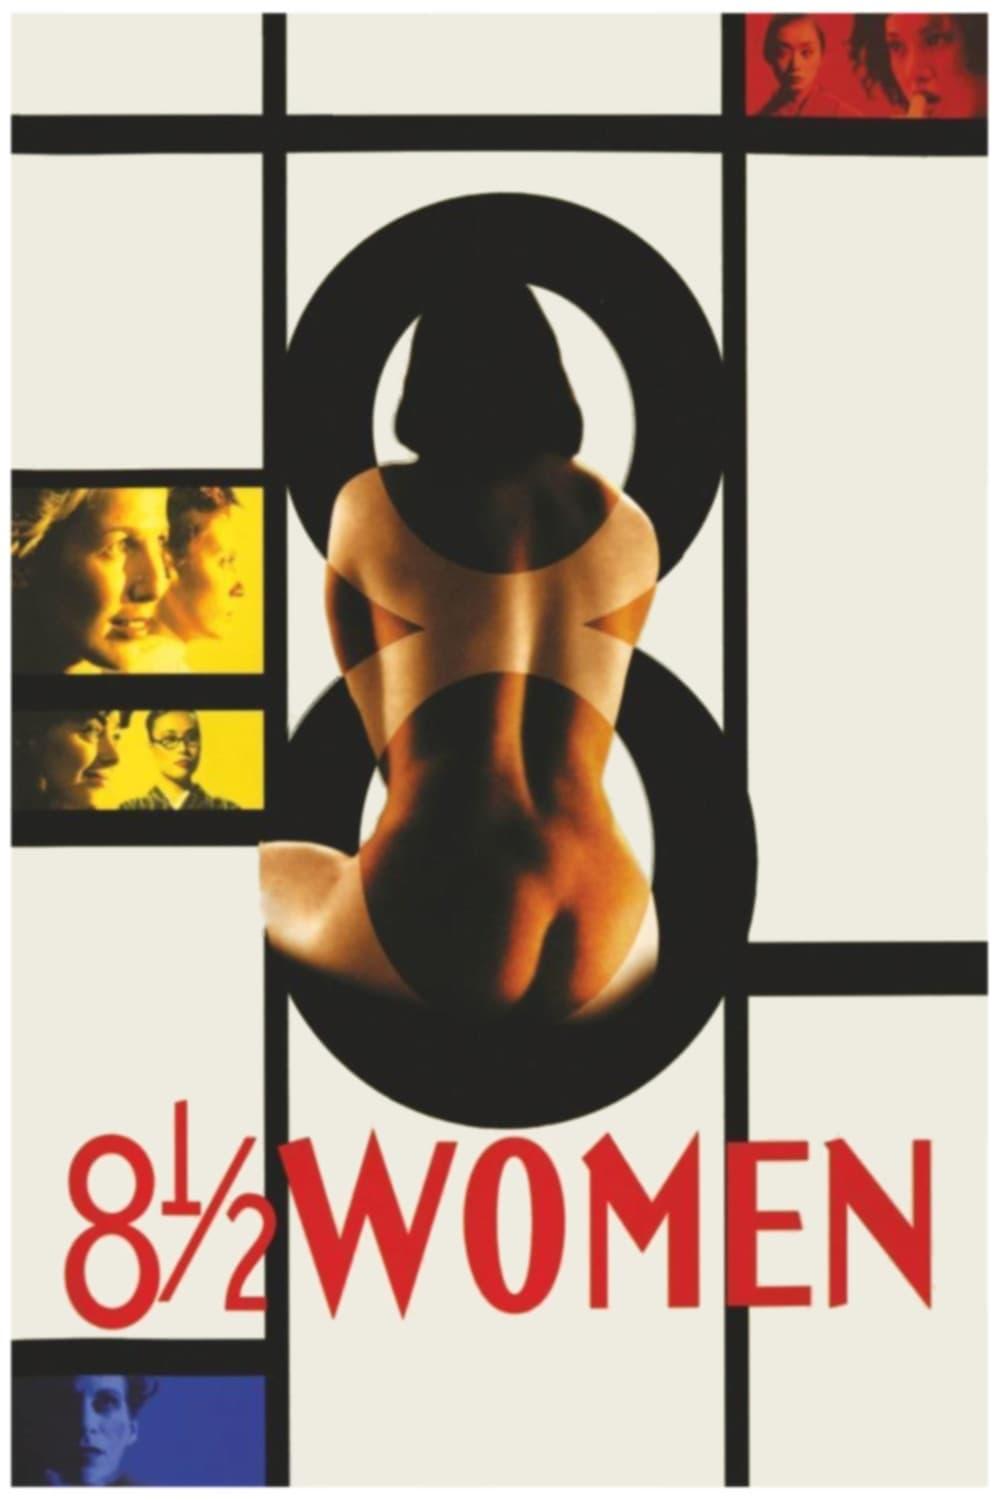 8 ½ Women poster